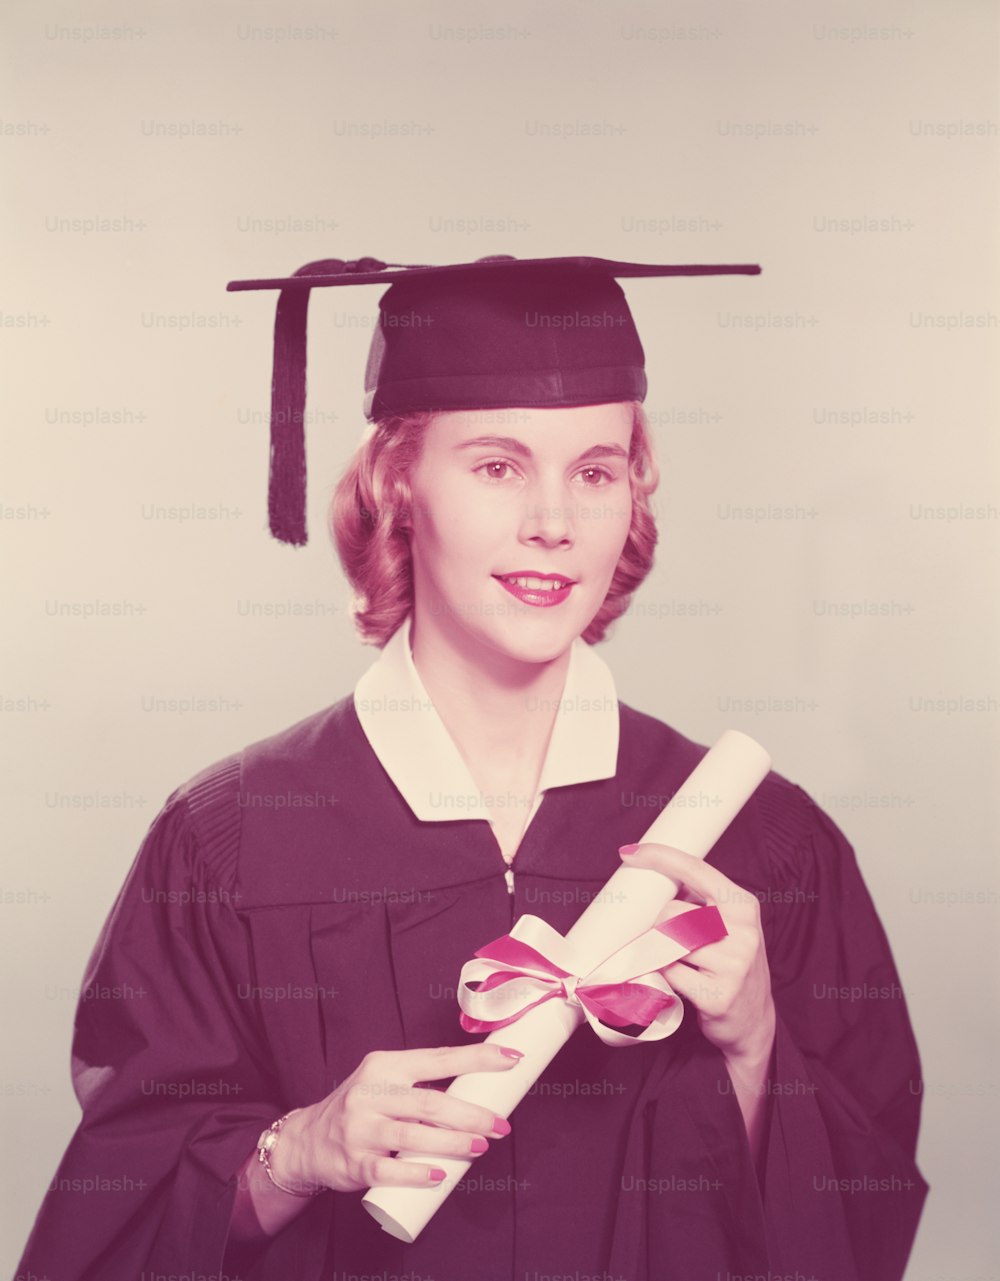 ÉTATS-UNIS - Vers les années 1950 : Jeune femme vêtue d’une robe de fin d’études et d’un mortier, tenant un diplôme noué avec un ruban rouge et blanc.